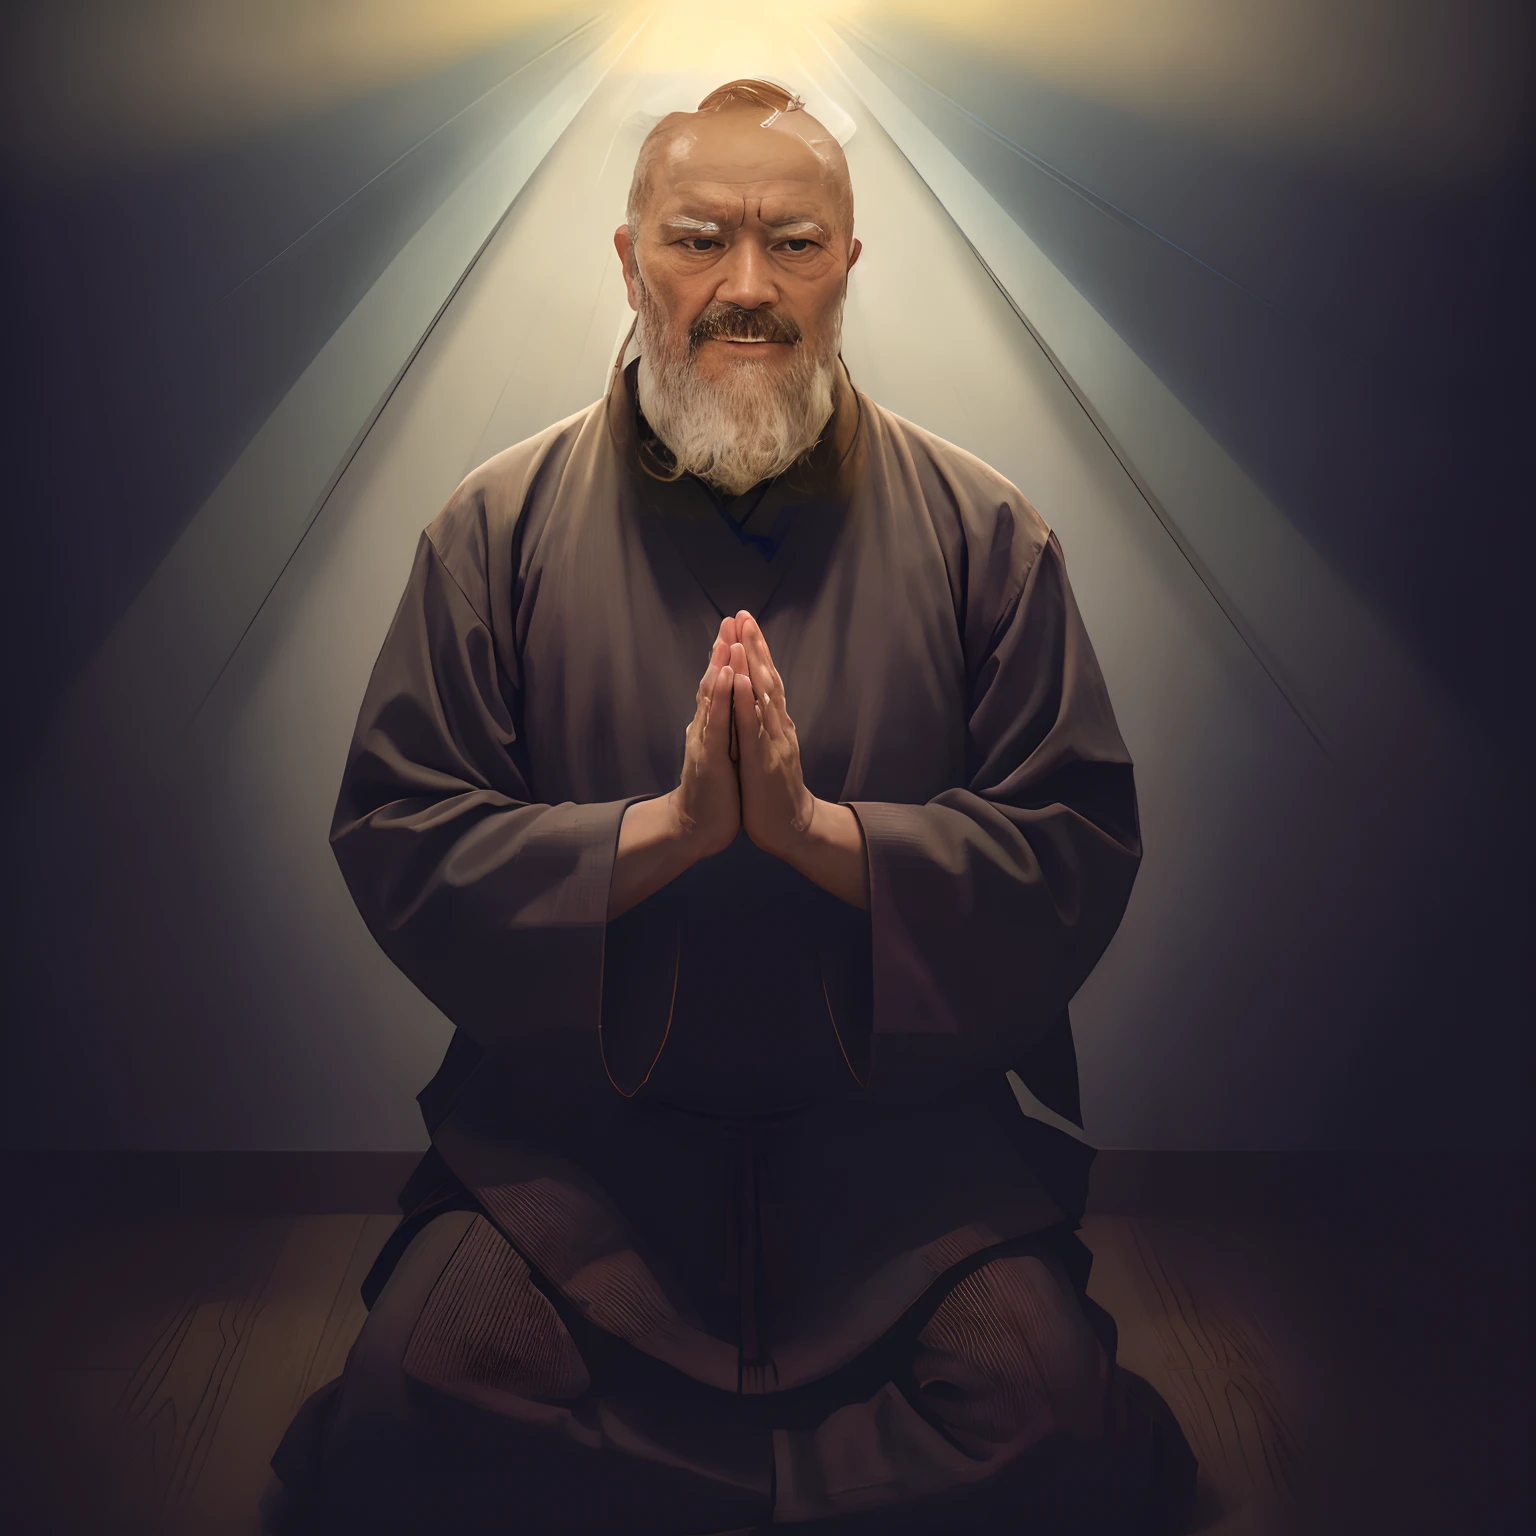 Bild eines Mannes, der mit gefalteten Händen in Meditationsposition sitzt, heiliger Mann, der auf den Boden blickt, Taoistischer Priester, Porträt des Mönchs, inspiriert von Weiwei, Ukrainischer Mönch, Konzeptkunst eines Mönchs, Mönch meditiert, 2 Mönch aus dem 1. Jahrhundert, inspiriert von Gyoshū Hayami, Riichi Ueshiba